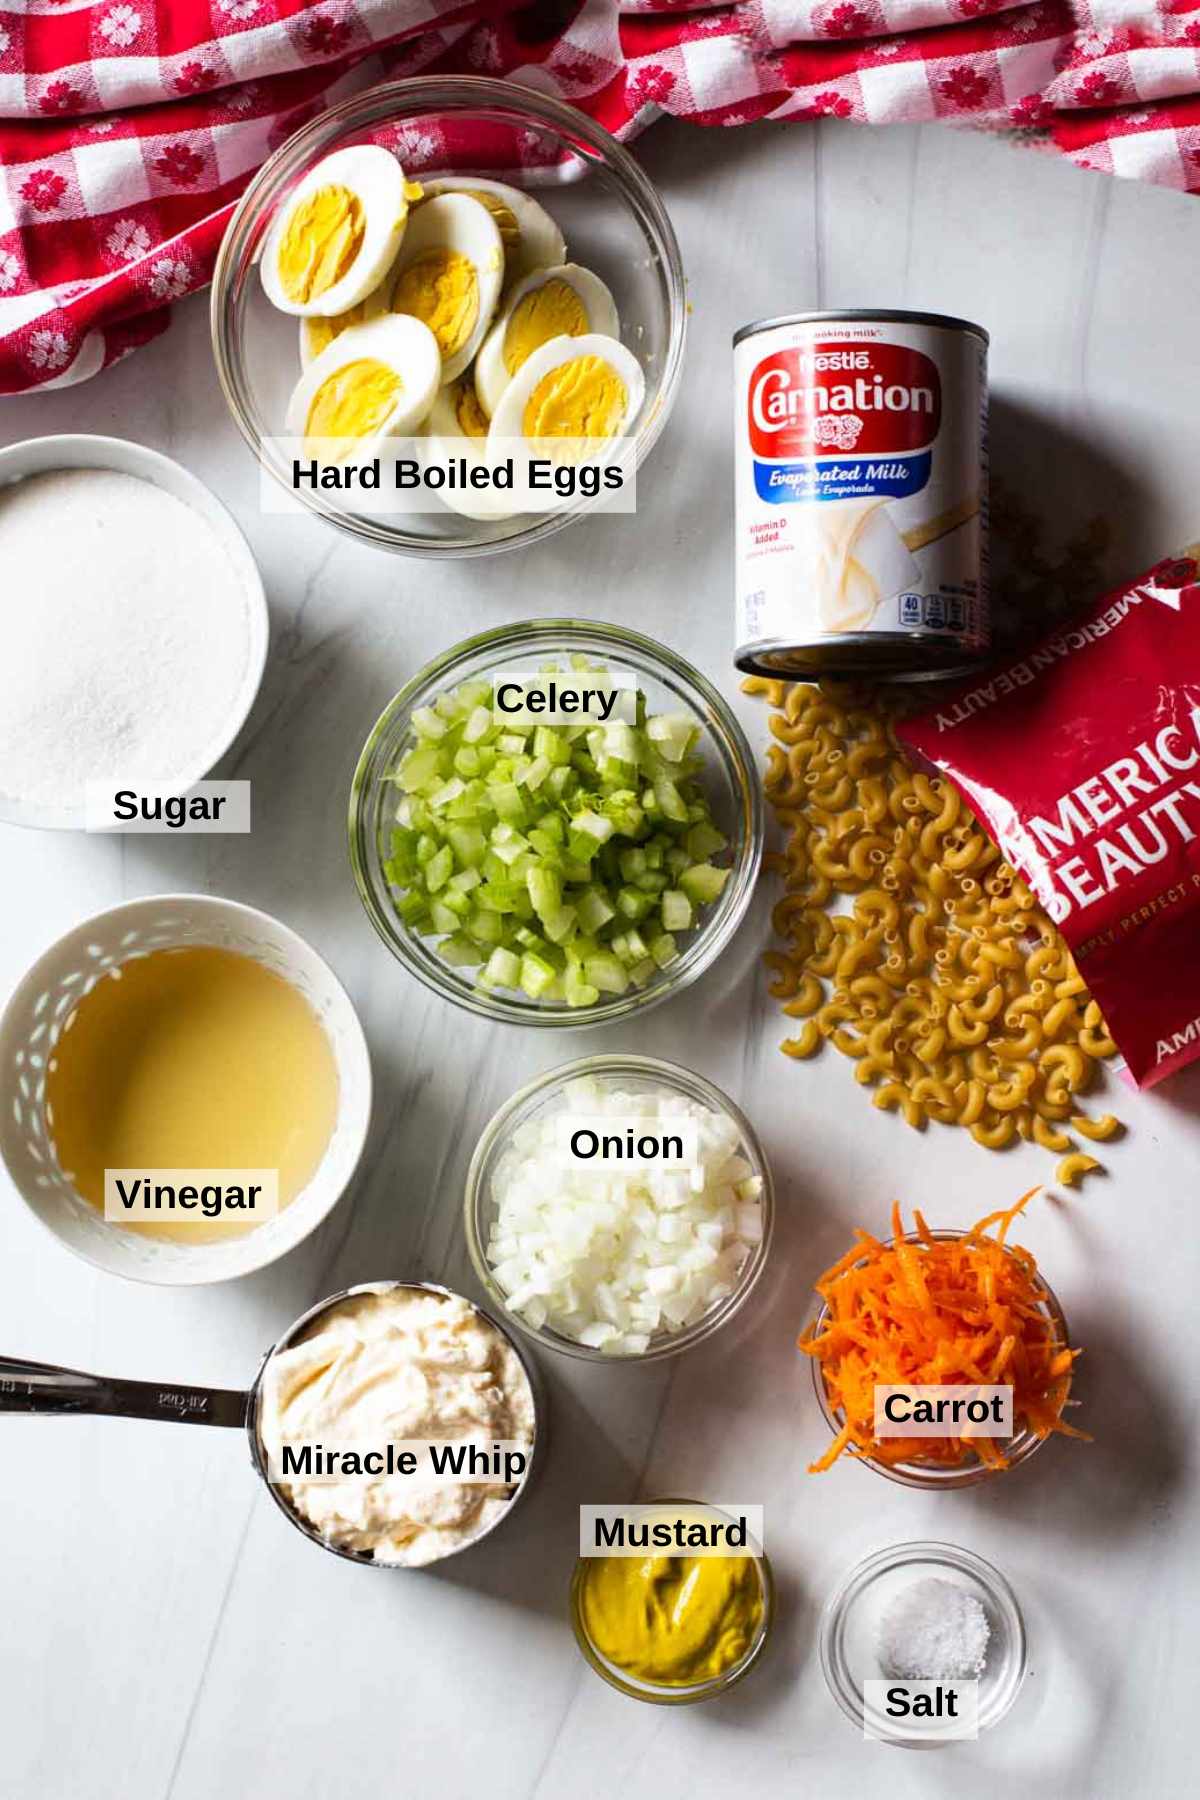 Ingredients to make Amish Macaroni Salad.